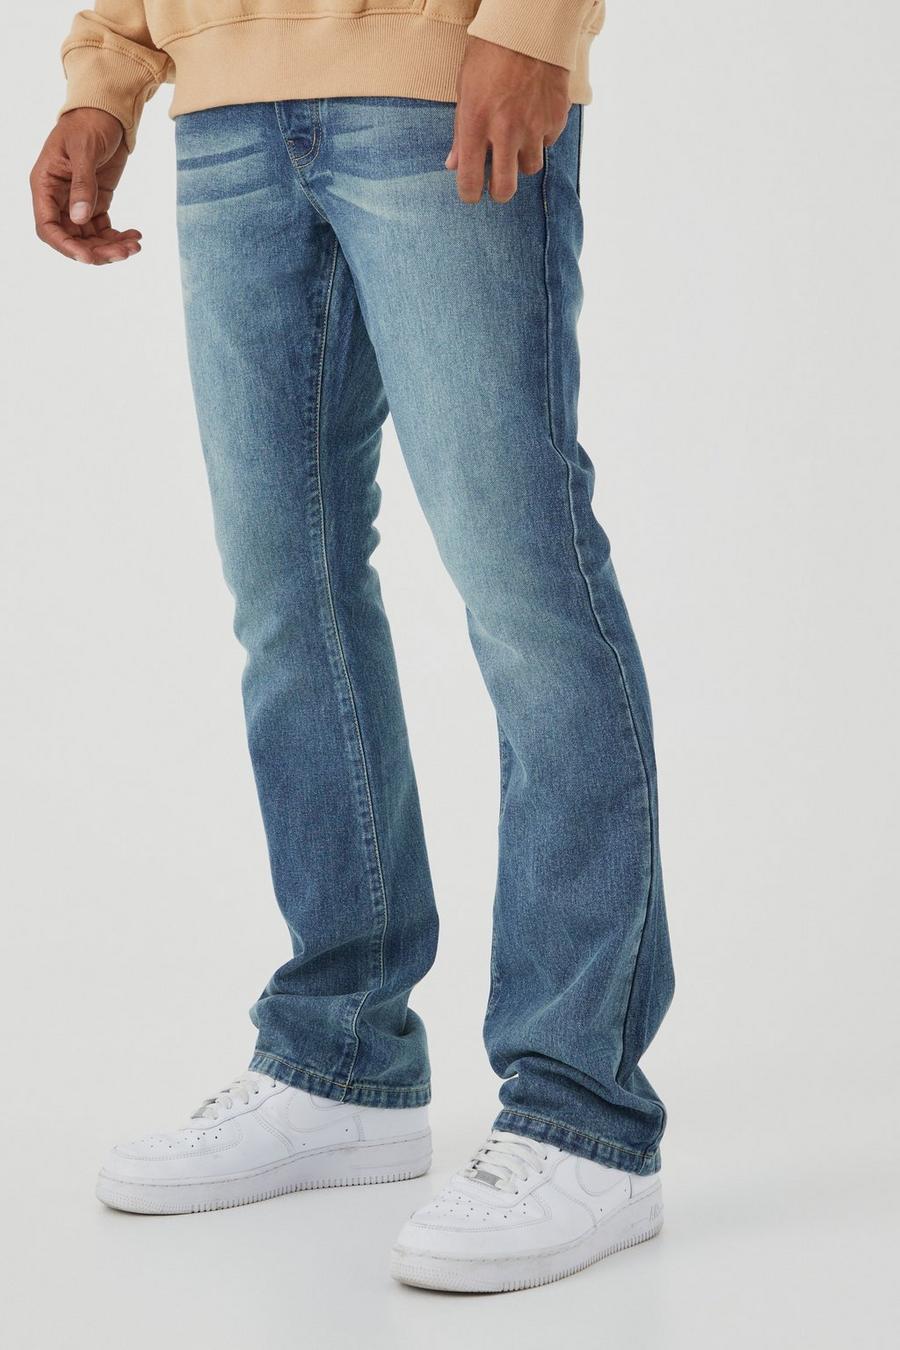 Boohoo Man Mens Size 30R Dark Blue Slim Fit Denim Jeans in 13 oz NEW